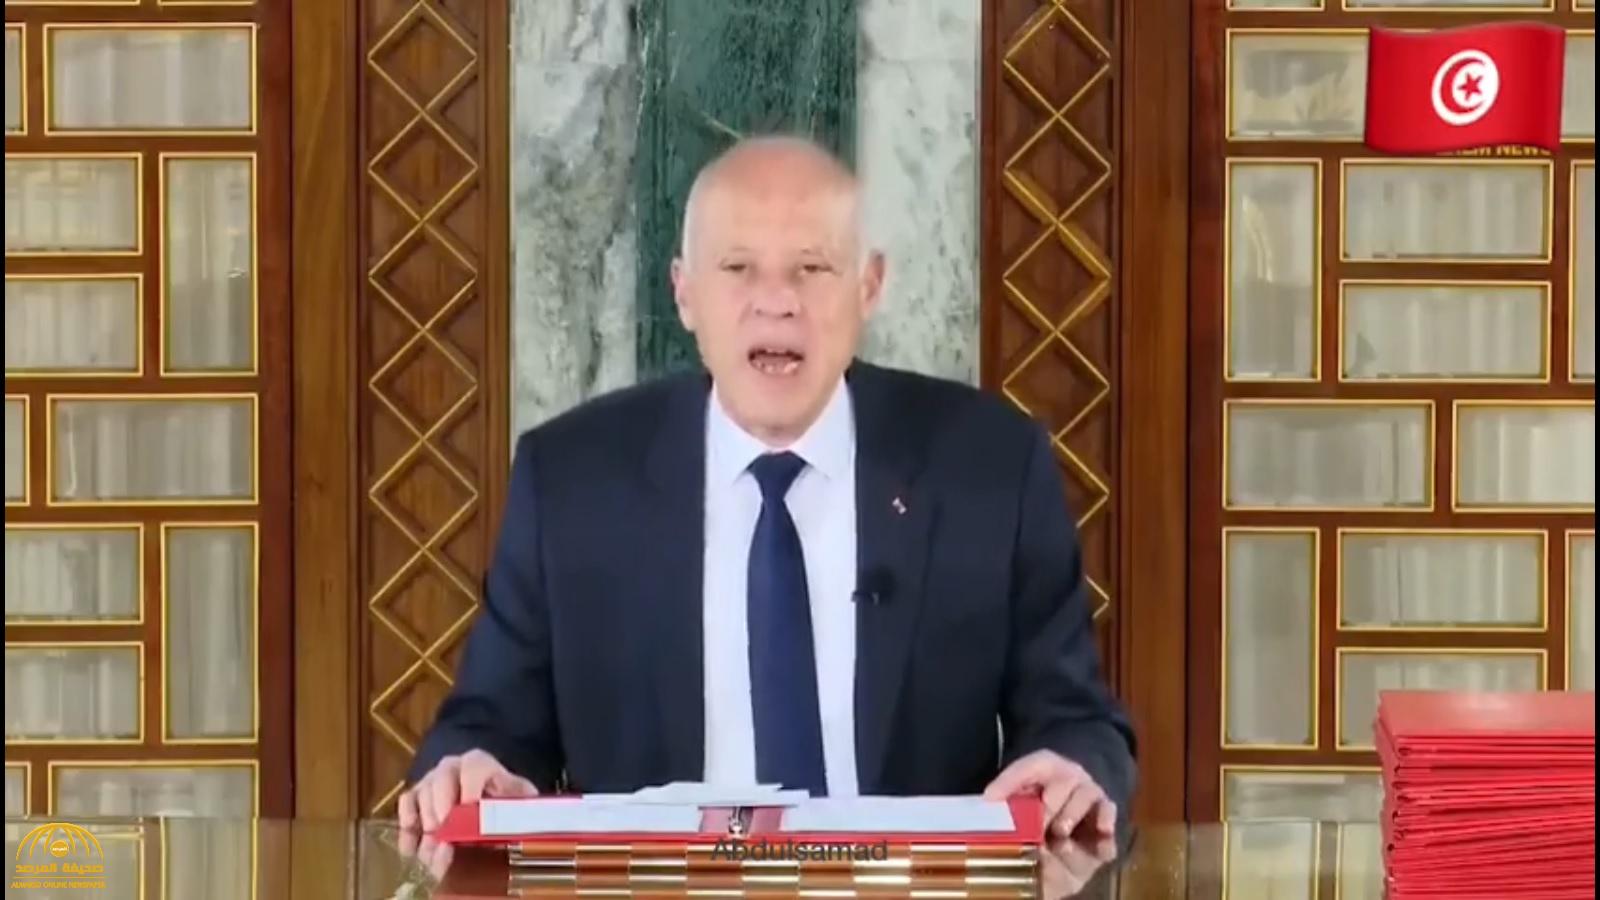 شاهد.. فيديو مثير للجدل للرئيس التونسي وهو يستشهد بآية غير موجودة في القرآن!